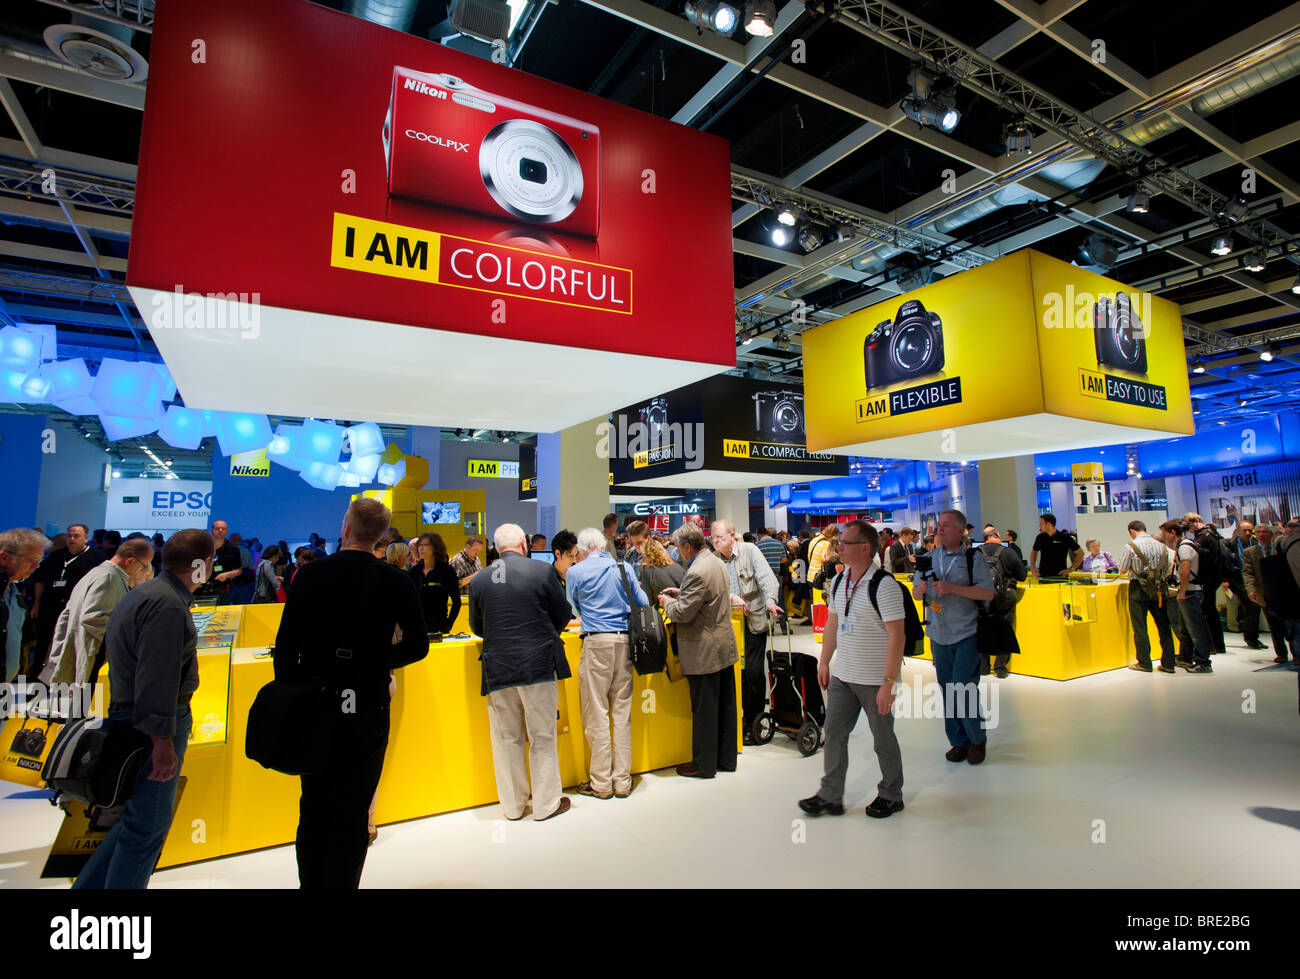 Viele Menschen in der Nikon-Stand auf der Photokina digital imaging-Messe in Köln Stockfoto